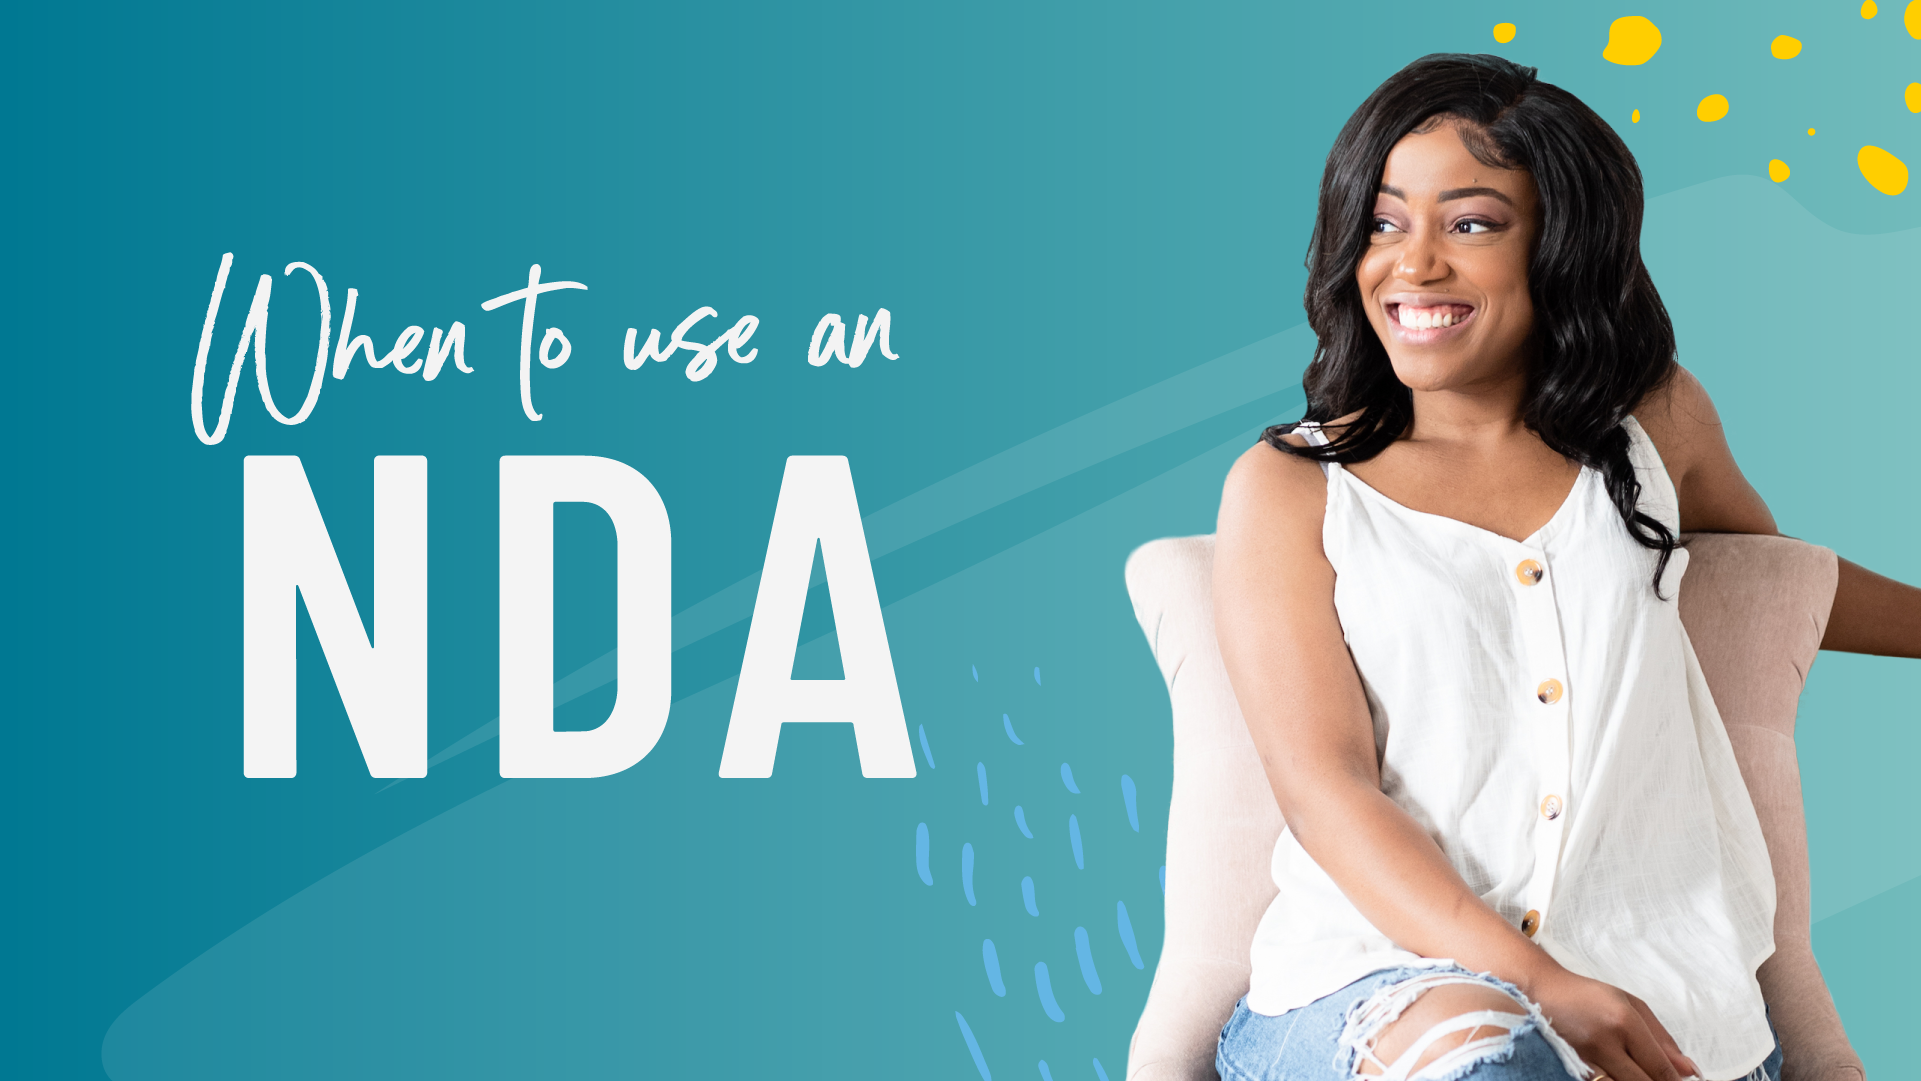 When Should You Use an NDA?